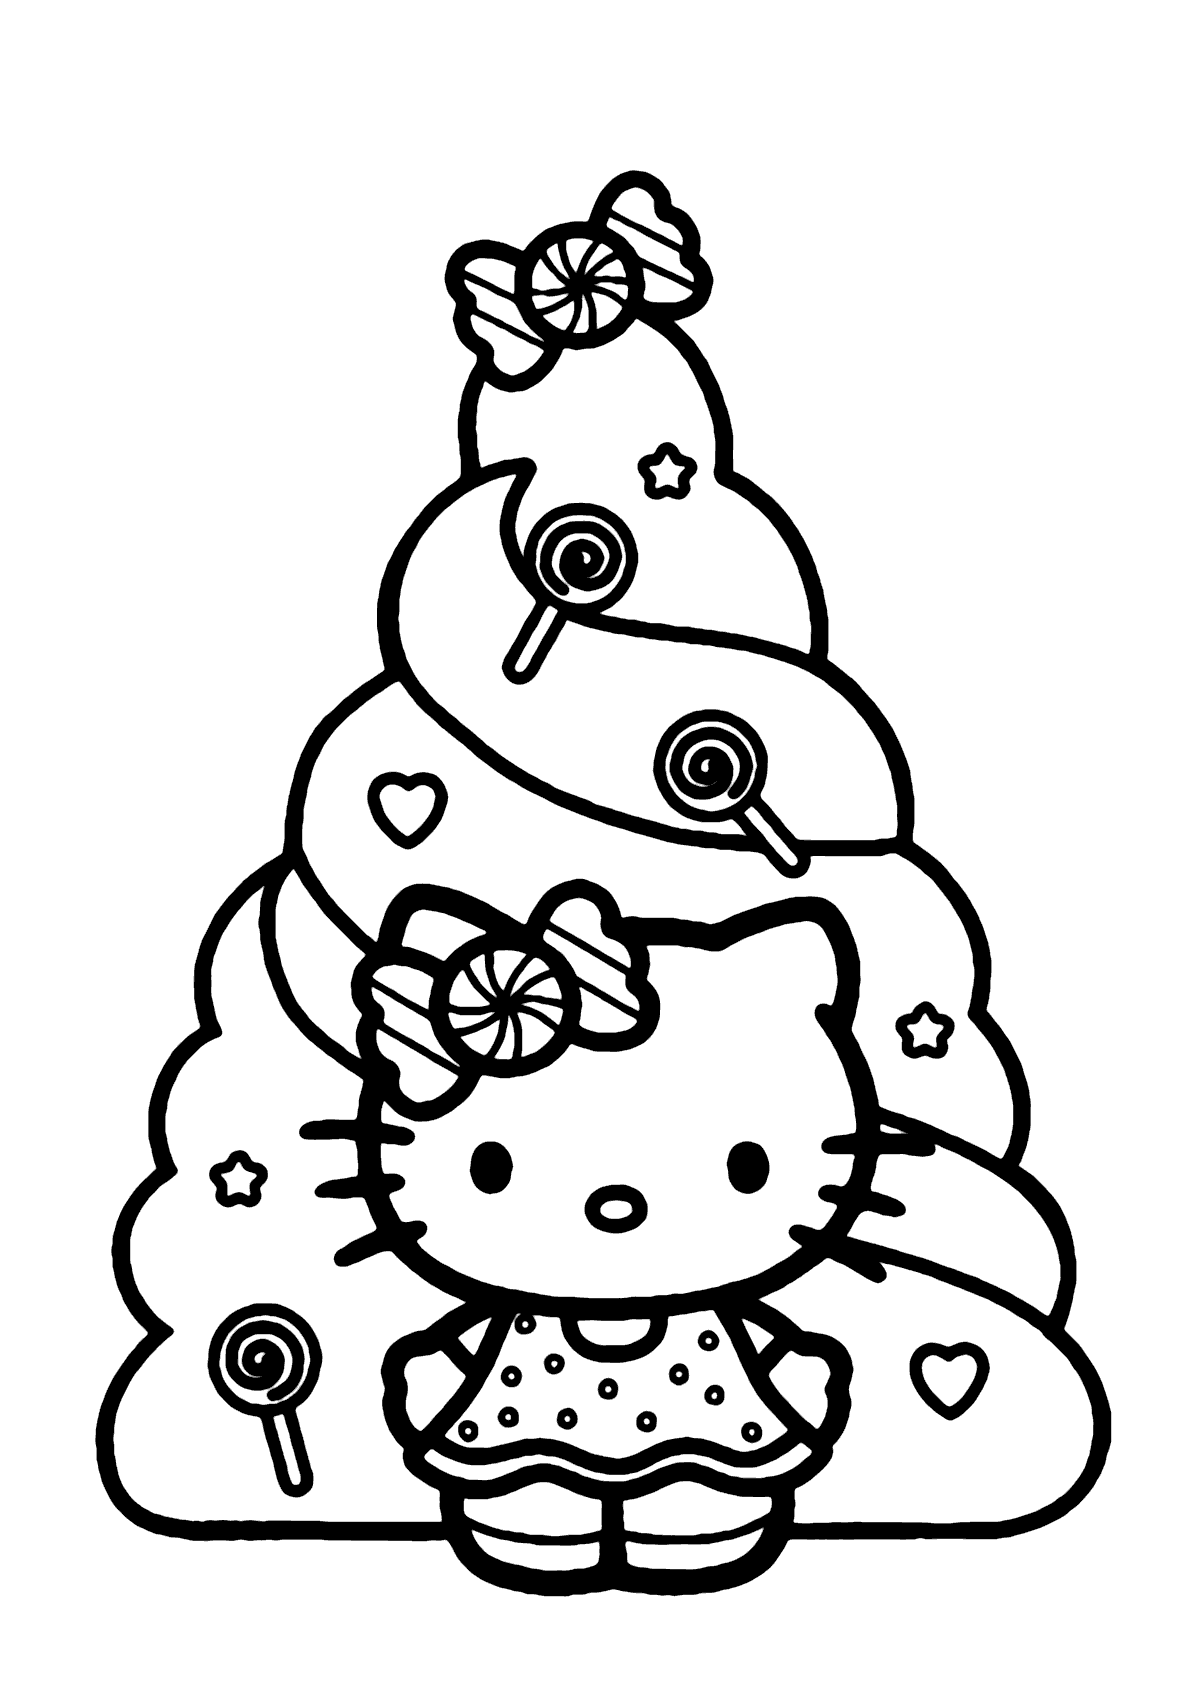 Desenhos para colorir Hello Kitty no Natal - Árvore de Natal